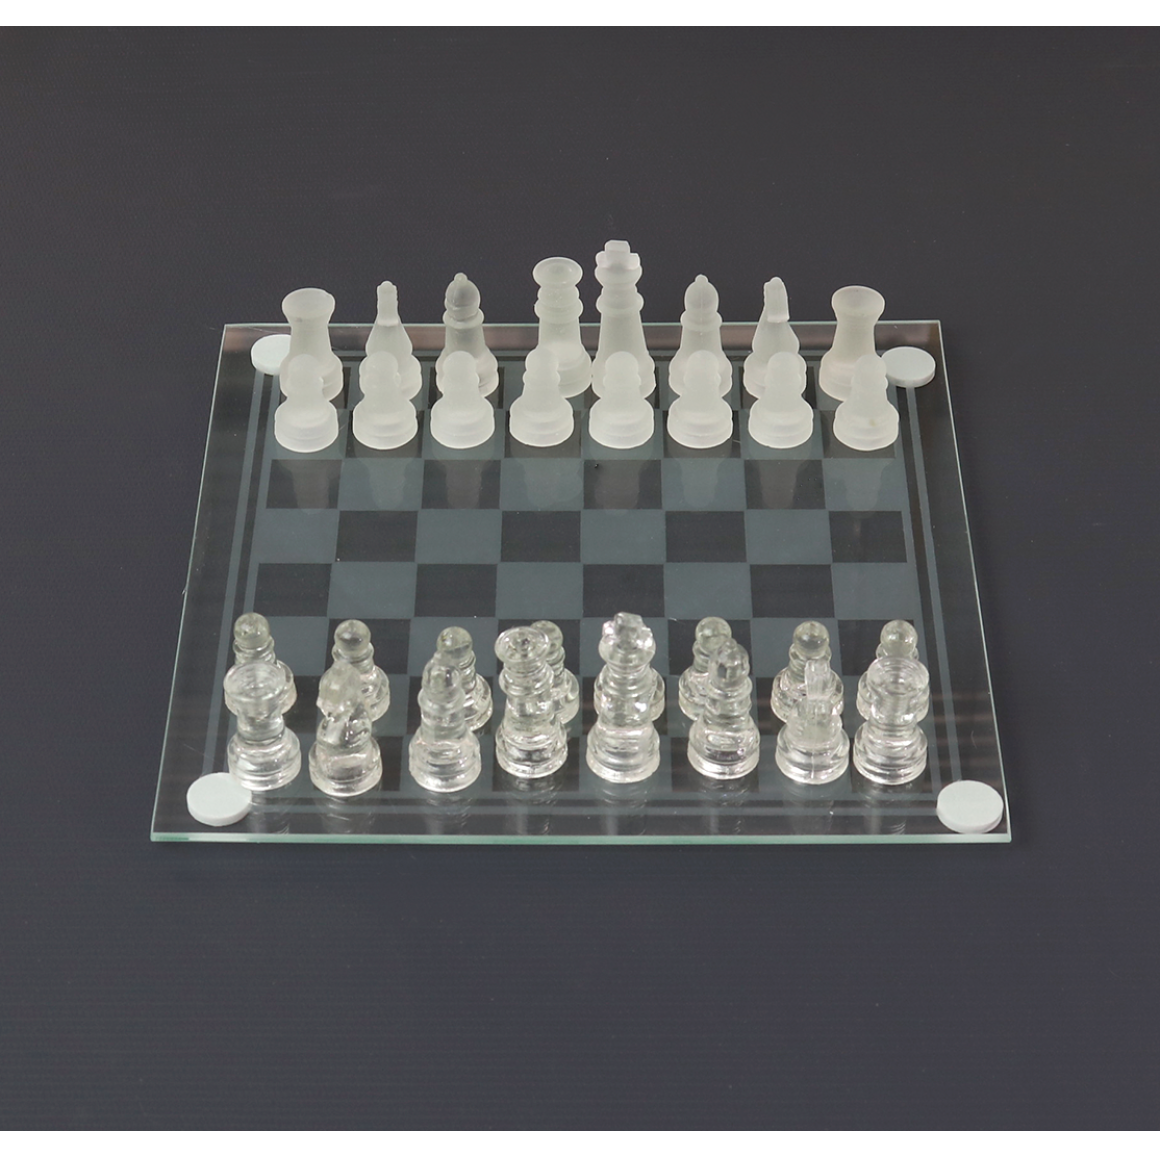 Jogo de tabuleiro de xadrez de vidro sólido funcional, vidro fosco  transparente, jogos para crianças e adultos, 20x20cm